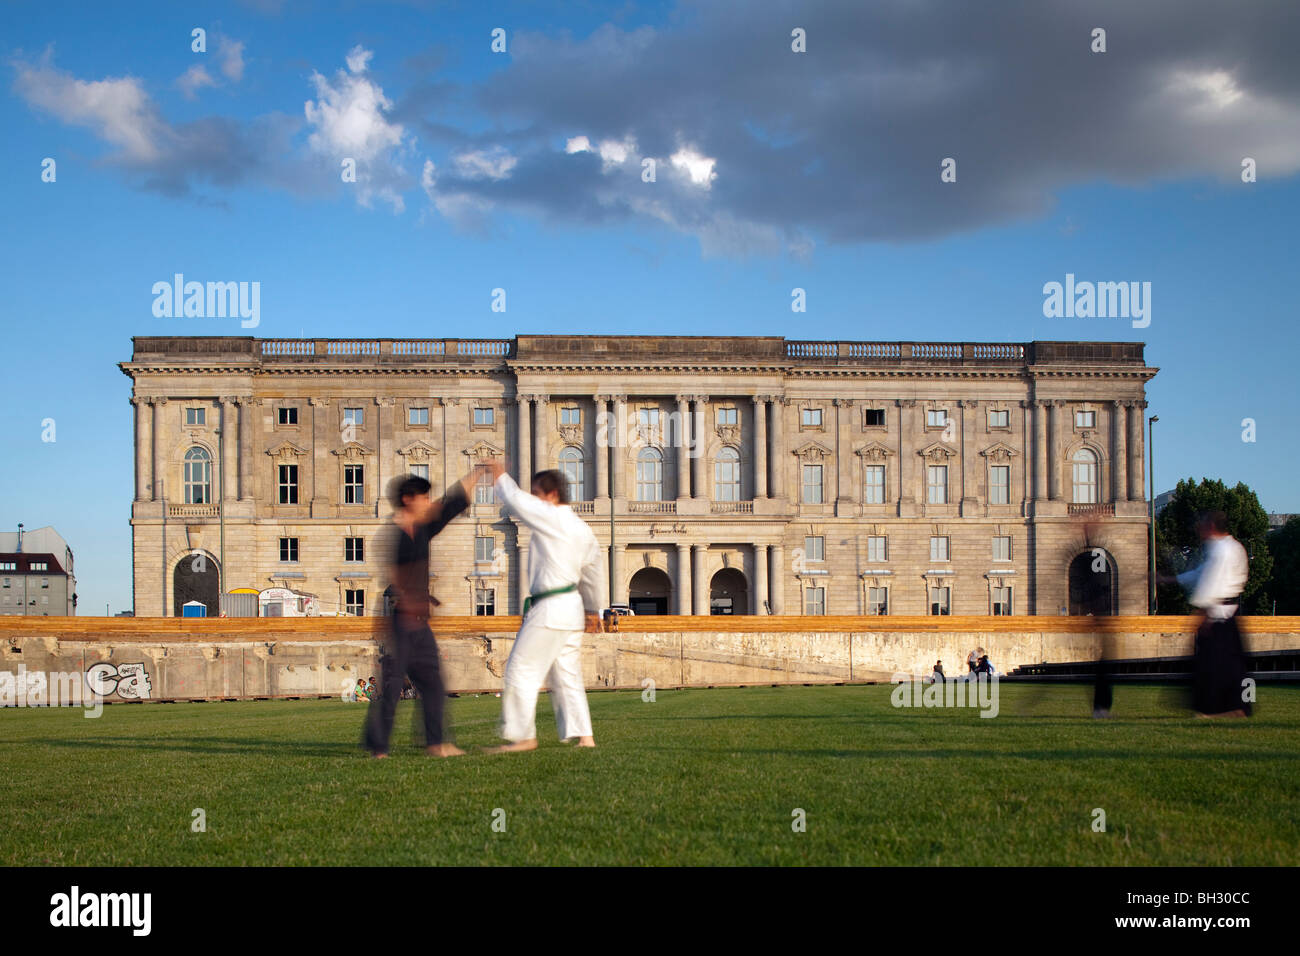 People practicing martial arts, Schlossplatz, Berlin, Germany Stock Photo